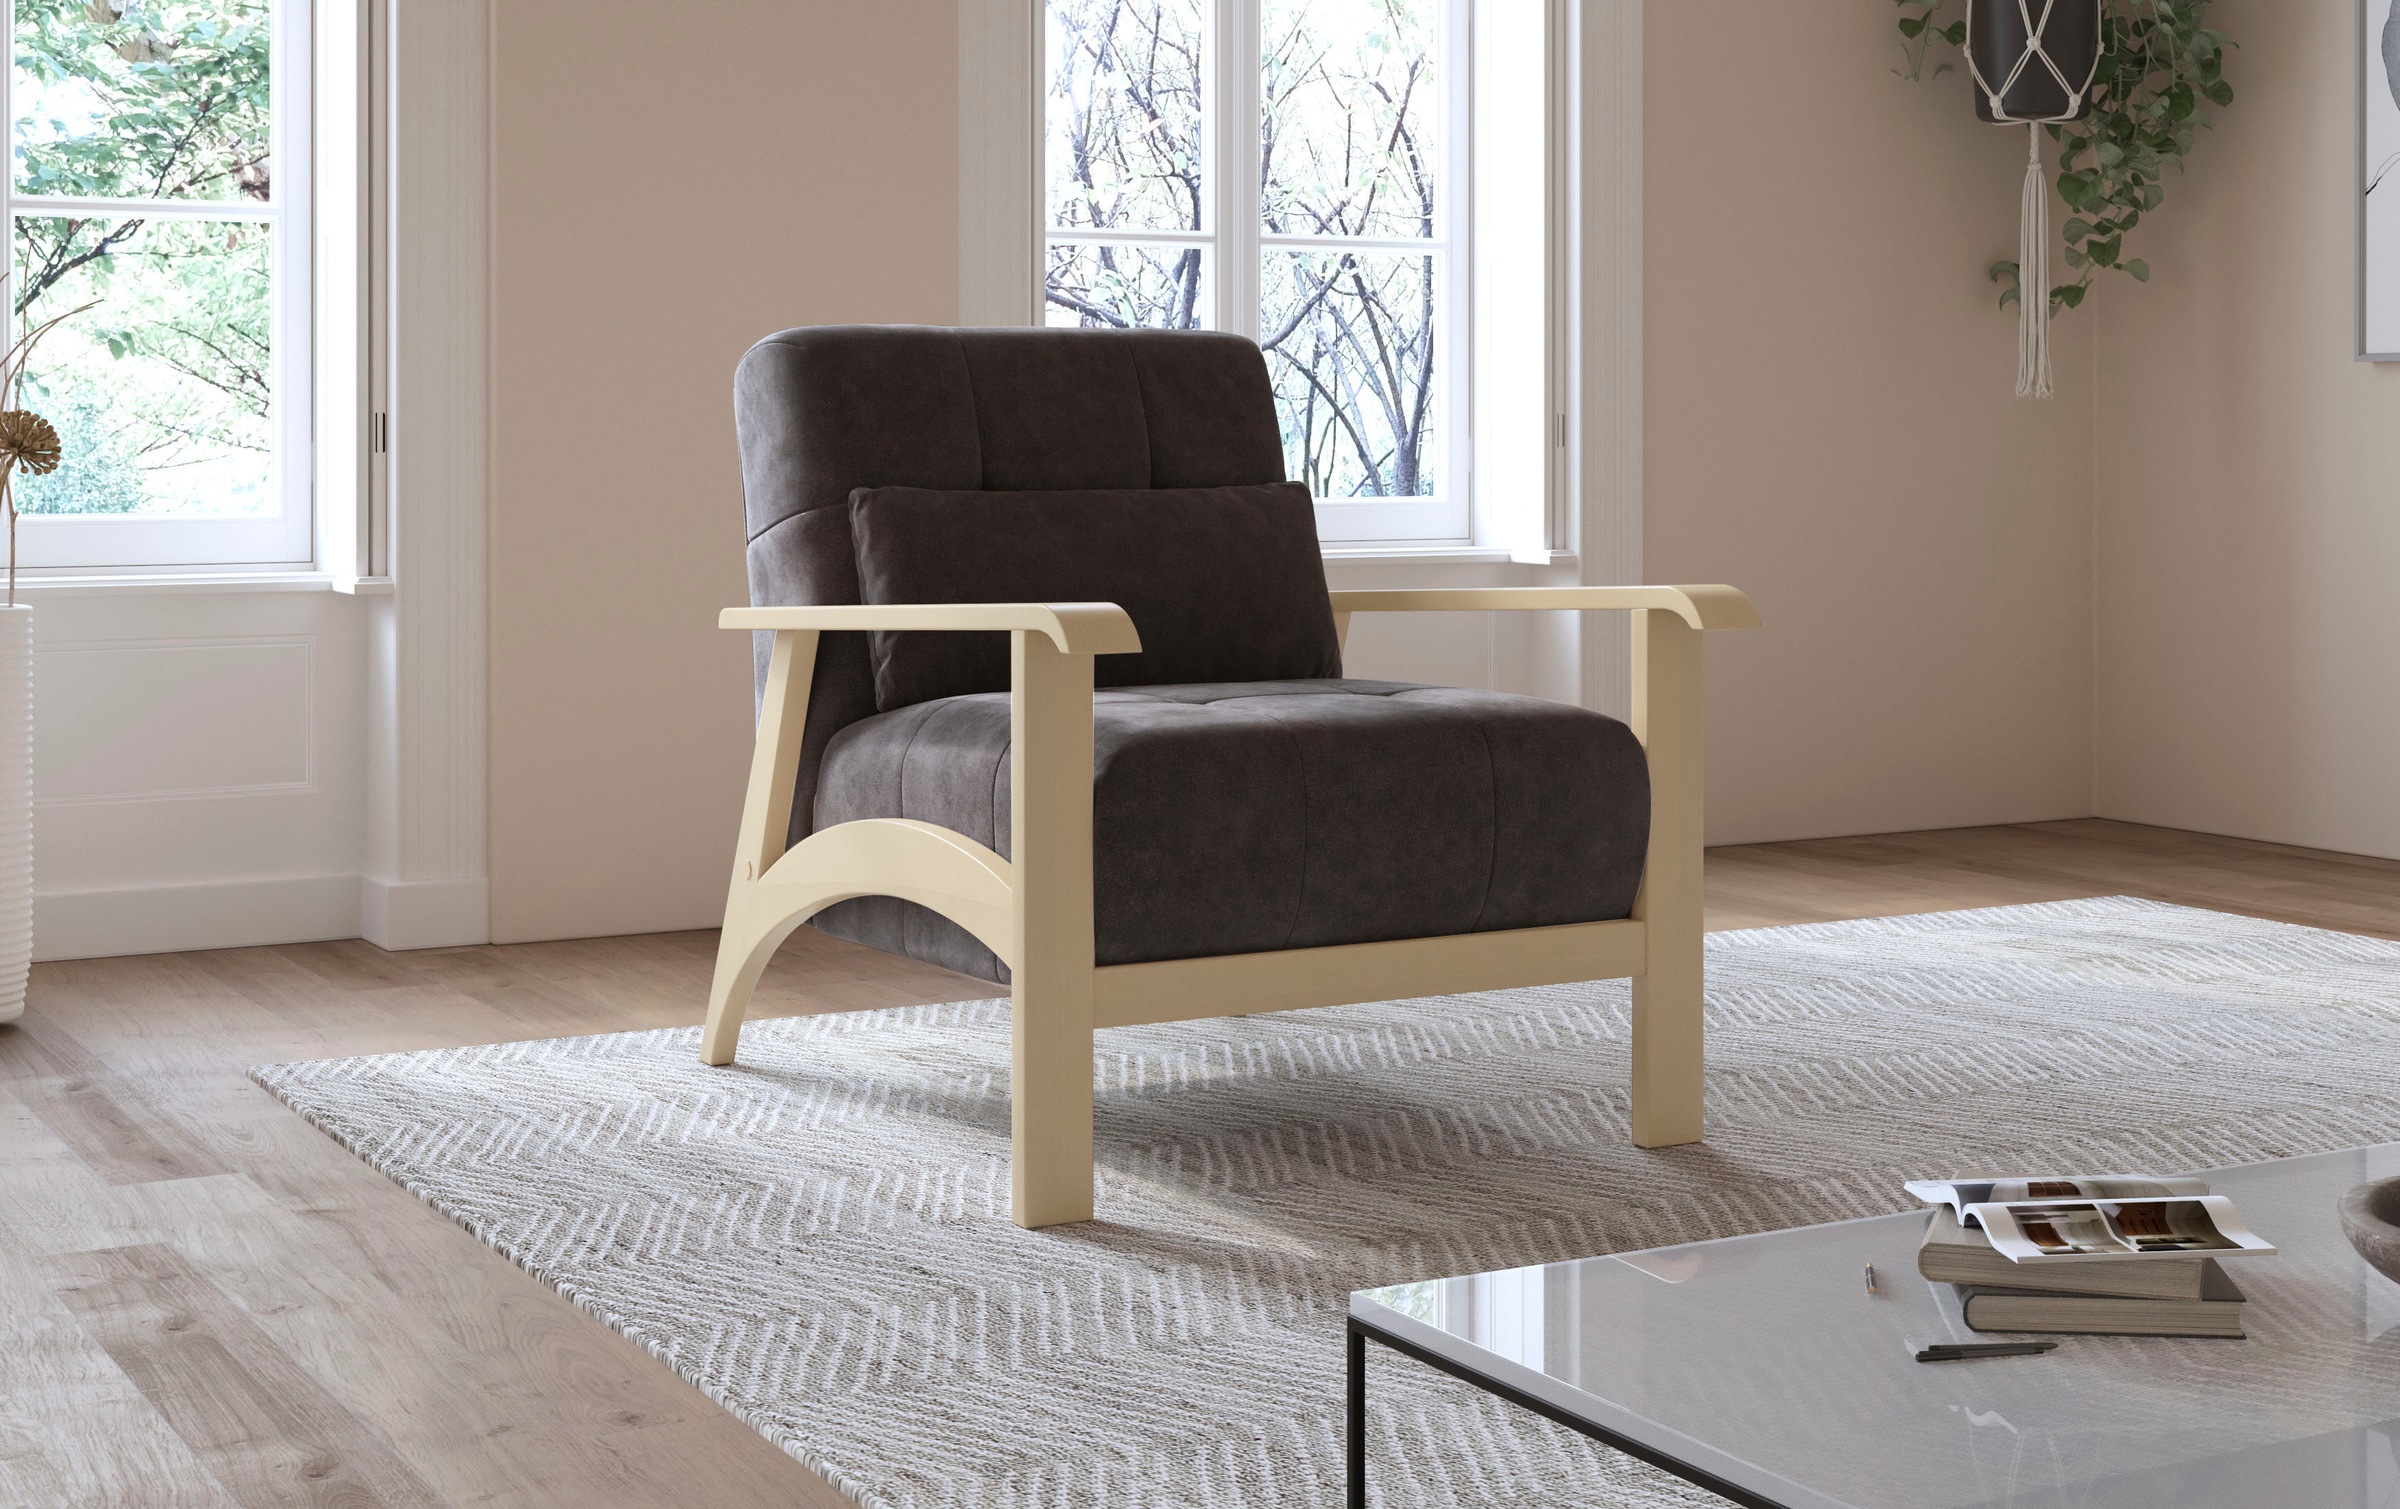 sit&more Sessel »Billund«, Armlehnen aus Buchenholz in natur, verschiedene Bezüge und Farben